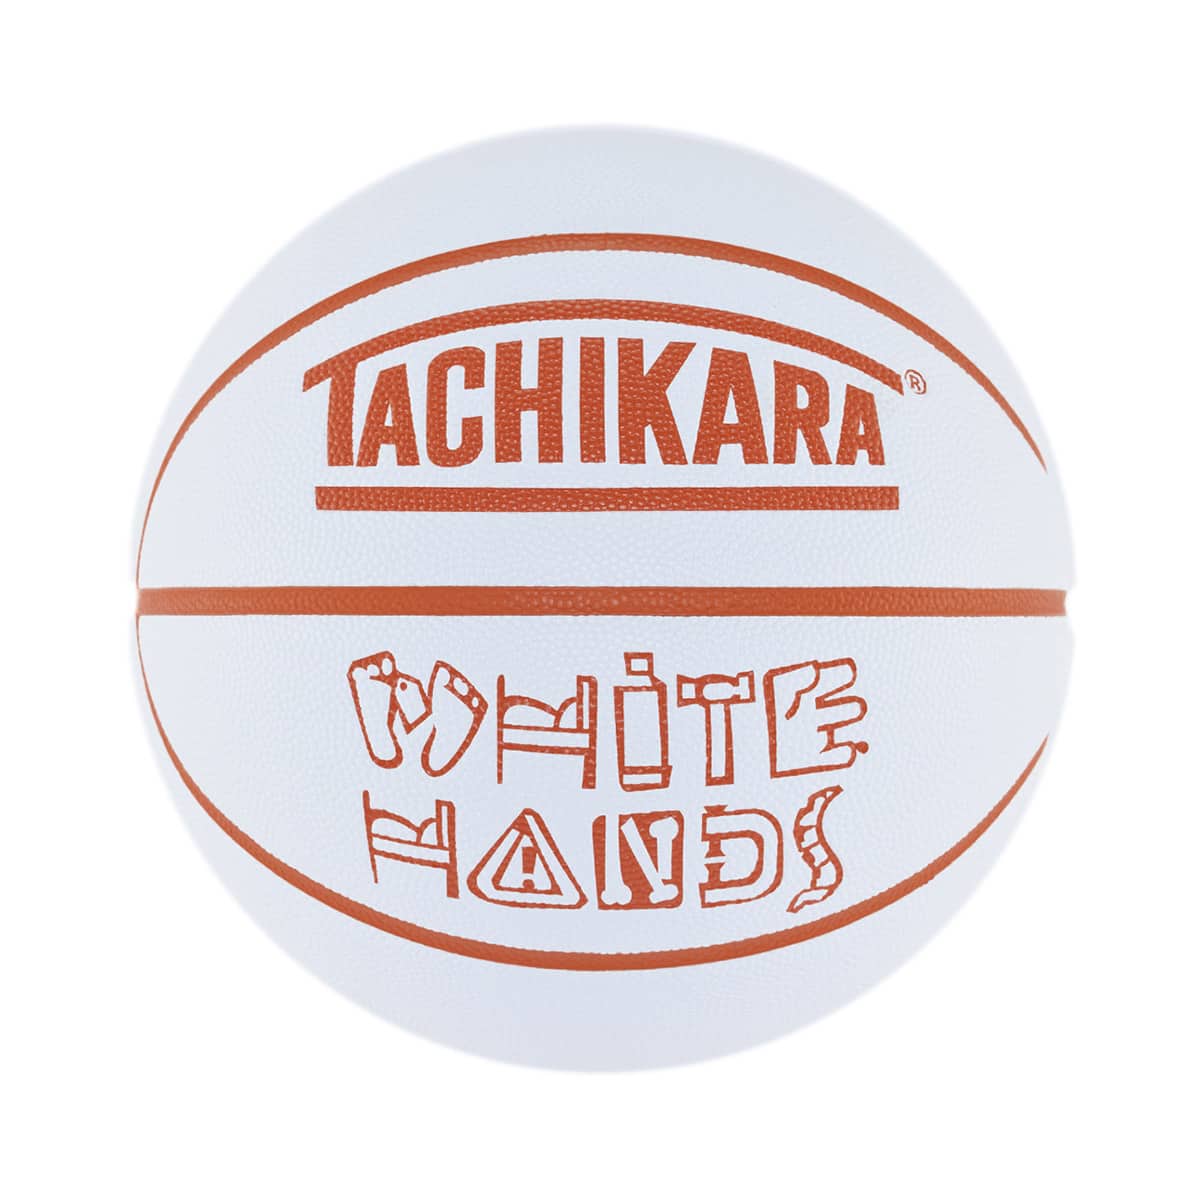 TACHIKARA WHITE HANDS WHITE / ORANGE 23SU-I